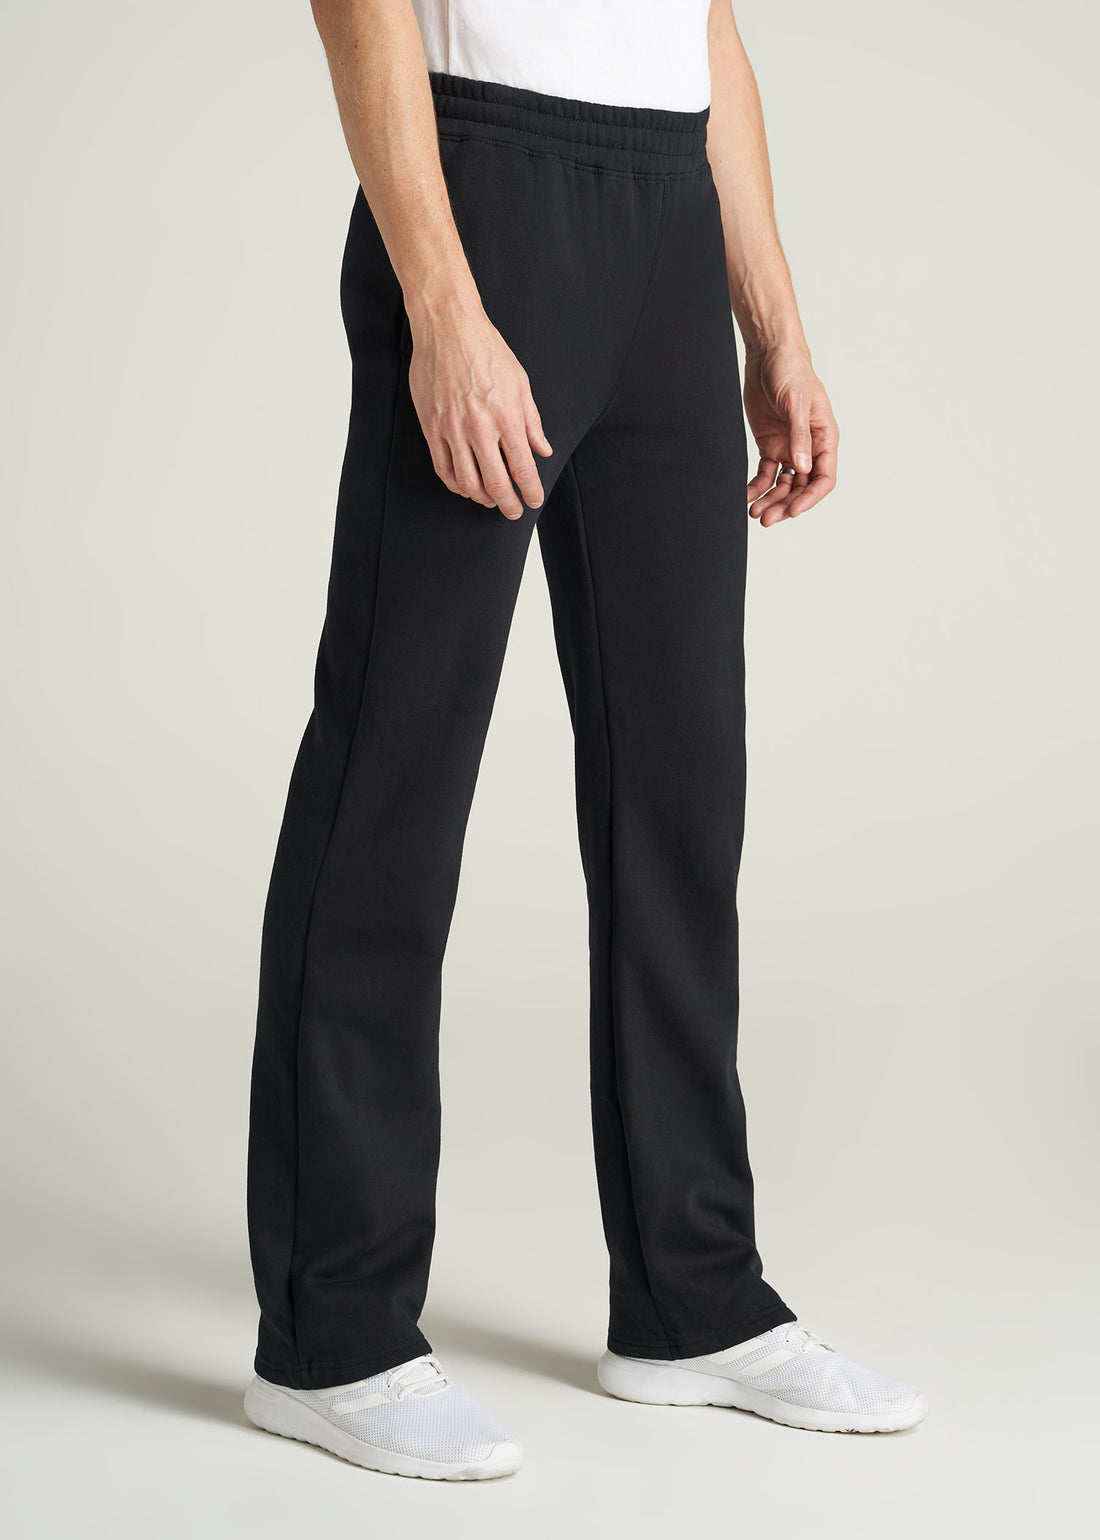 Wearever Fleece Open-Bottom Sweatpants for Tall Men | American Tall